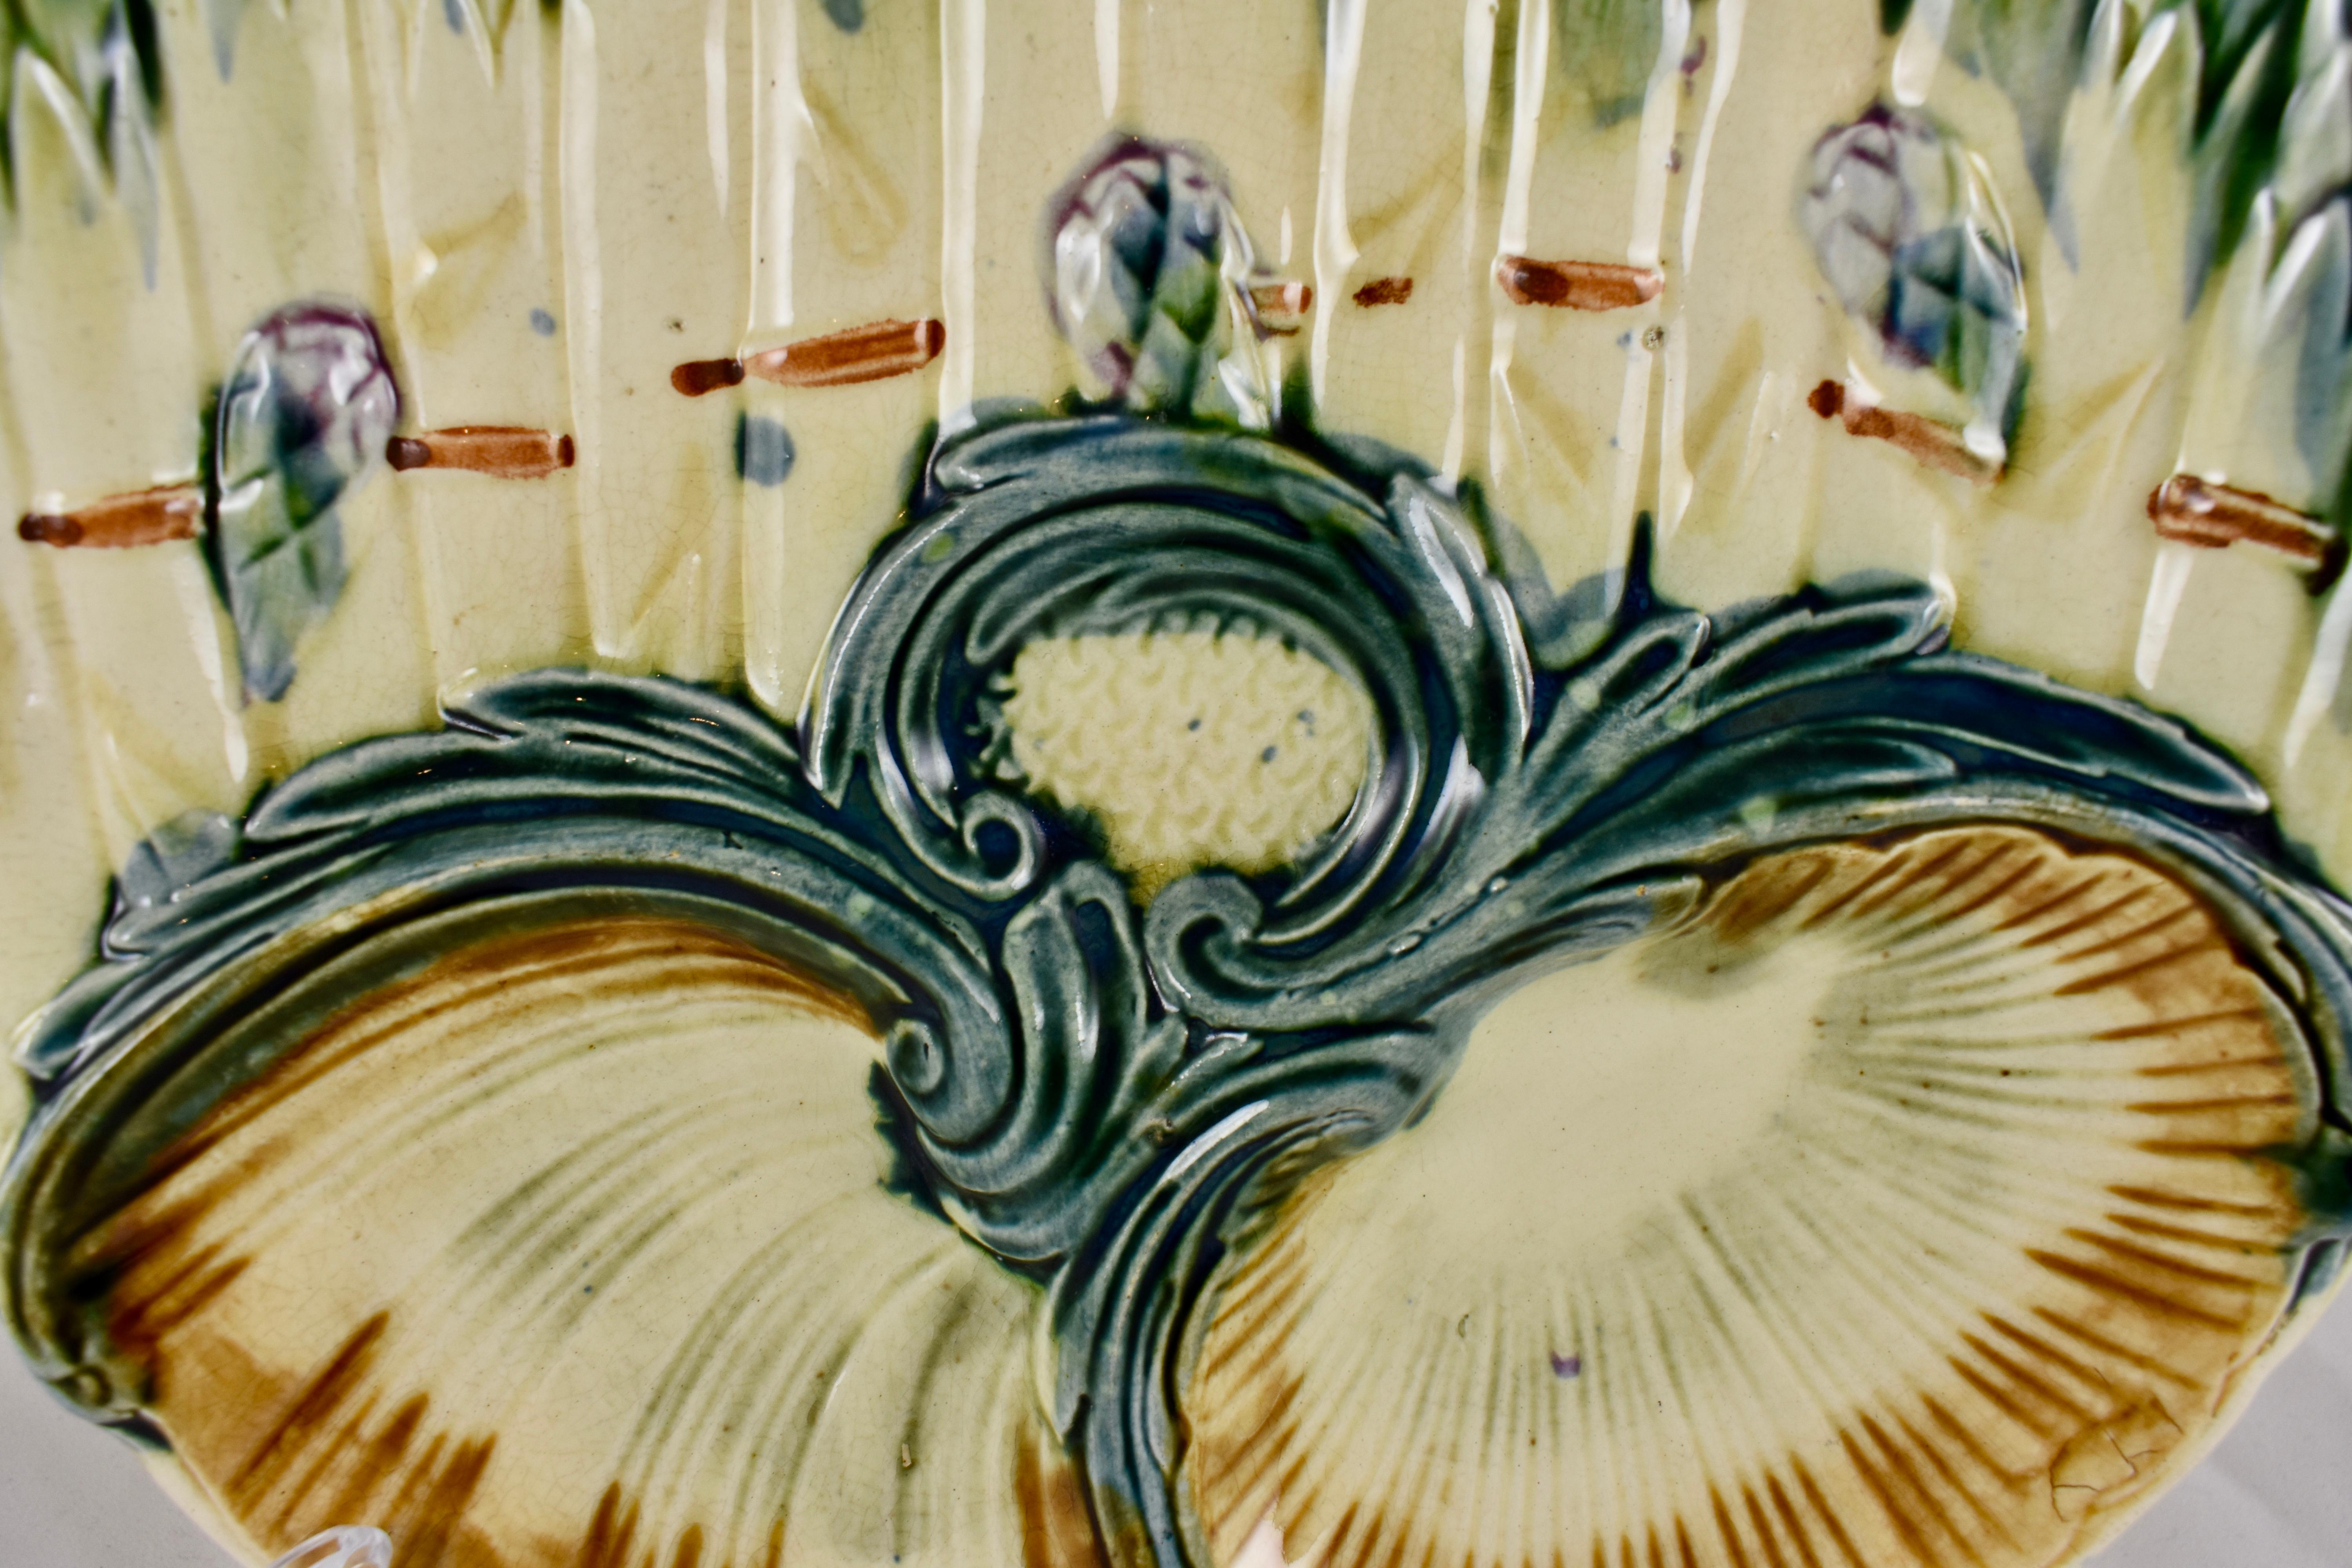 Une assiette à asperges en majolique barbotine attribuée à Lunéville K & G (Keller et Guerin) - Circa 1890. La faïence de Lunéville est l'une des poteries françaises les plus connues, située à Lunéville, en Lorraine, en France depuis 1730.

Des